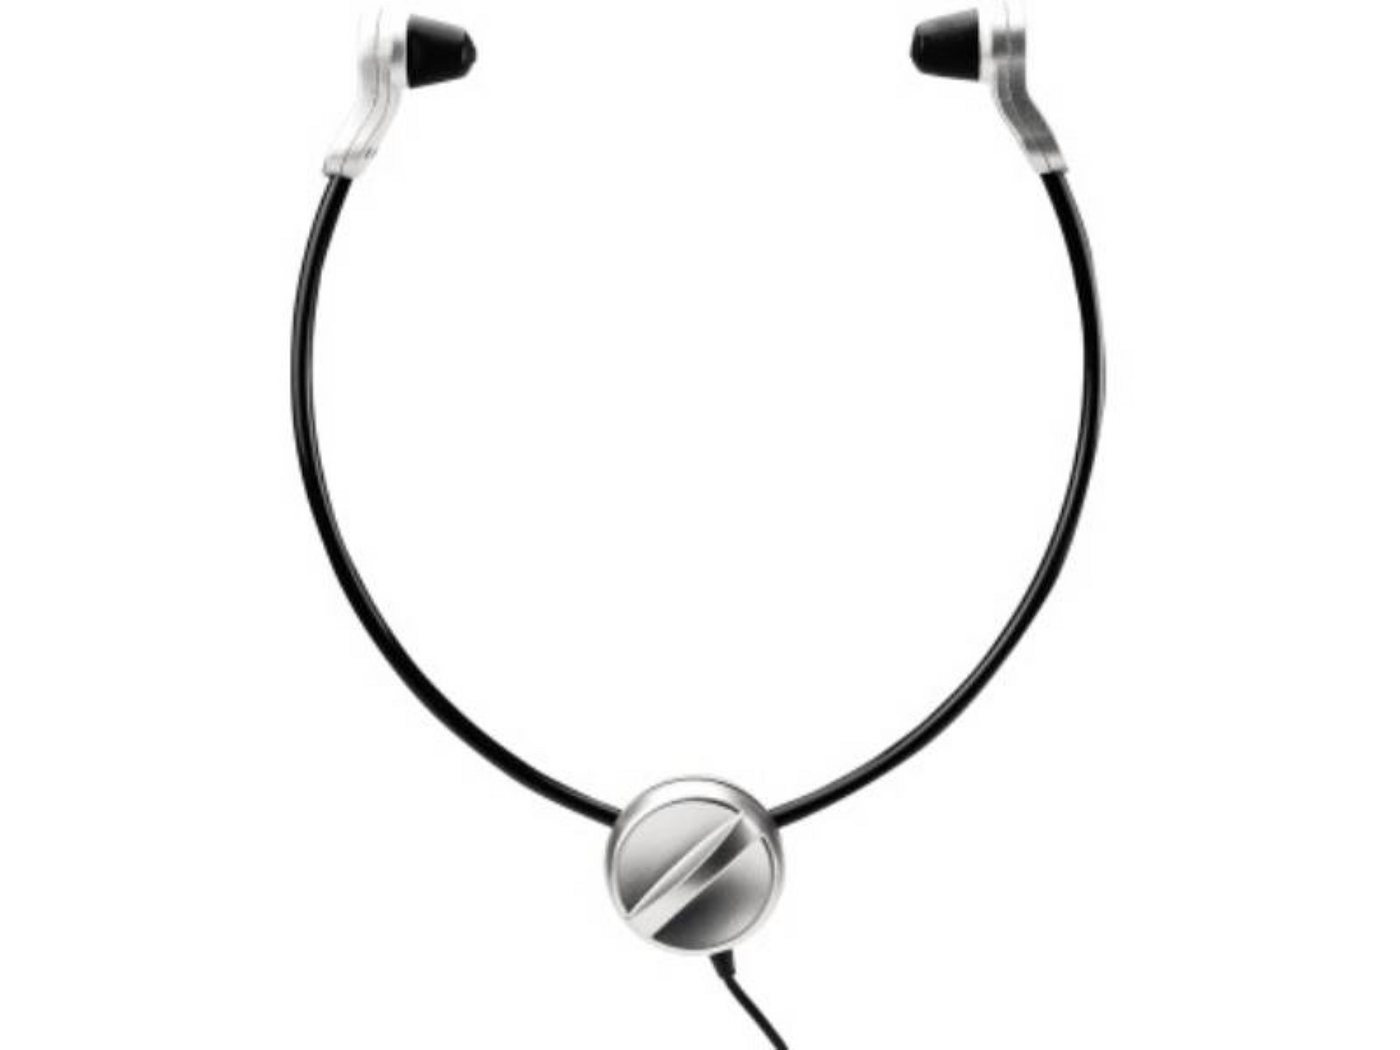 Grundig Grundig Kopfhörer Swingphone 568 PCC5683 USB-Stecker Unterkinnbügel Kopfhörer von Grundig